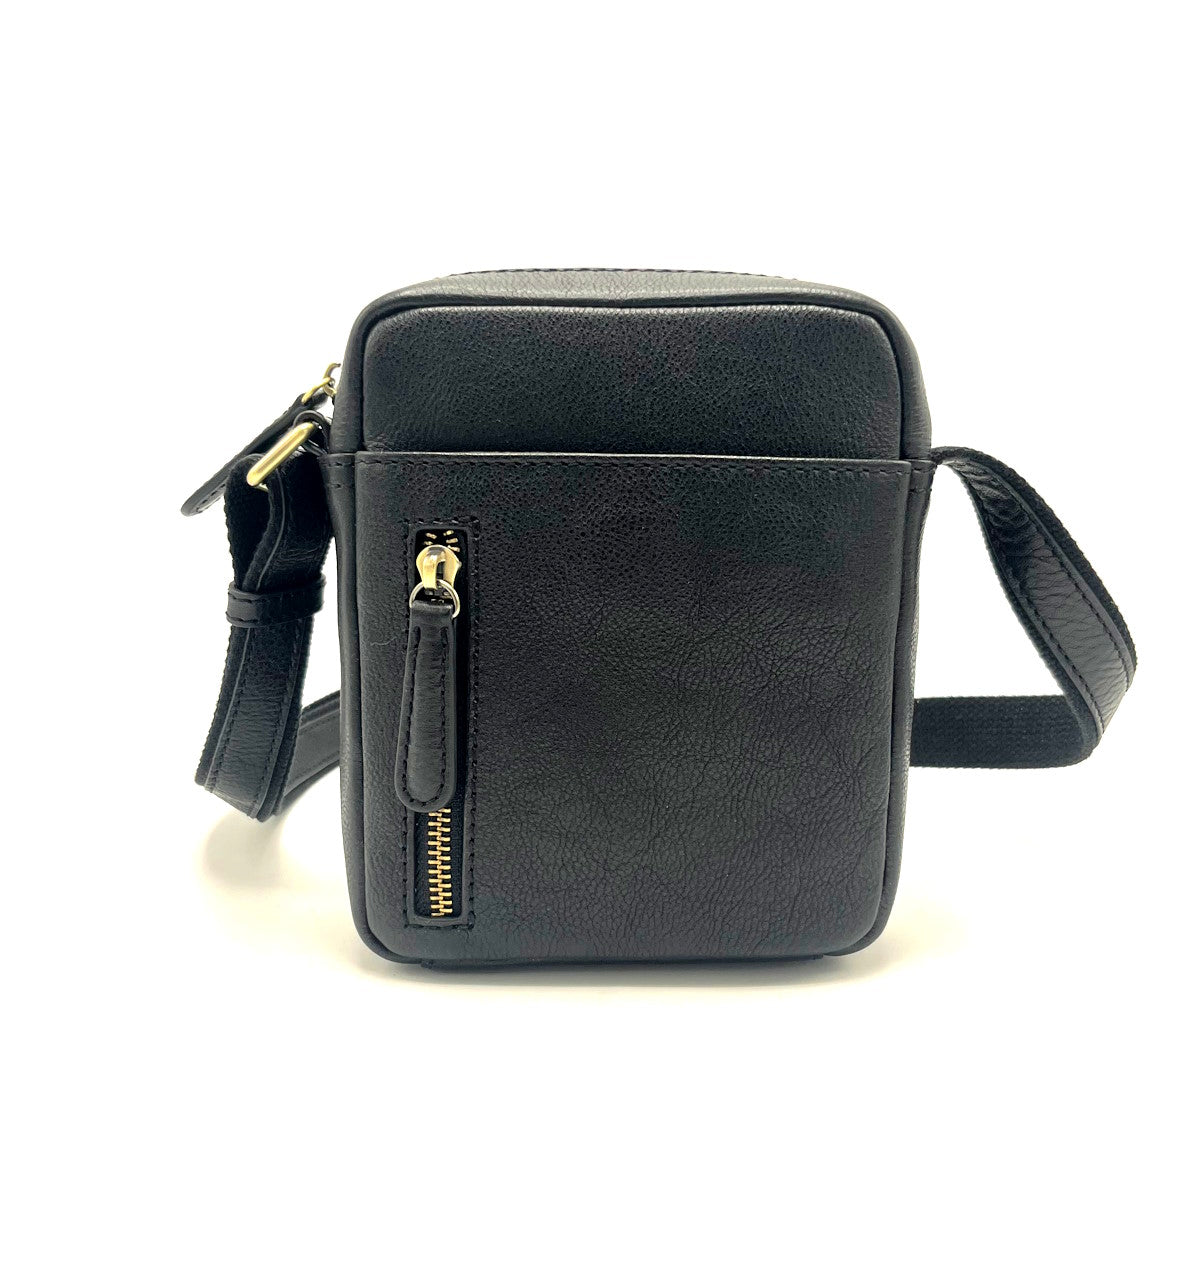 Genuine Leather shoulder bag small size, for men, art. VE4811